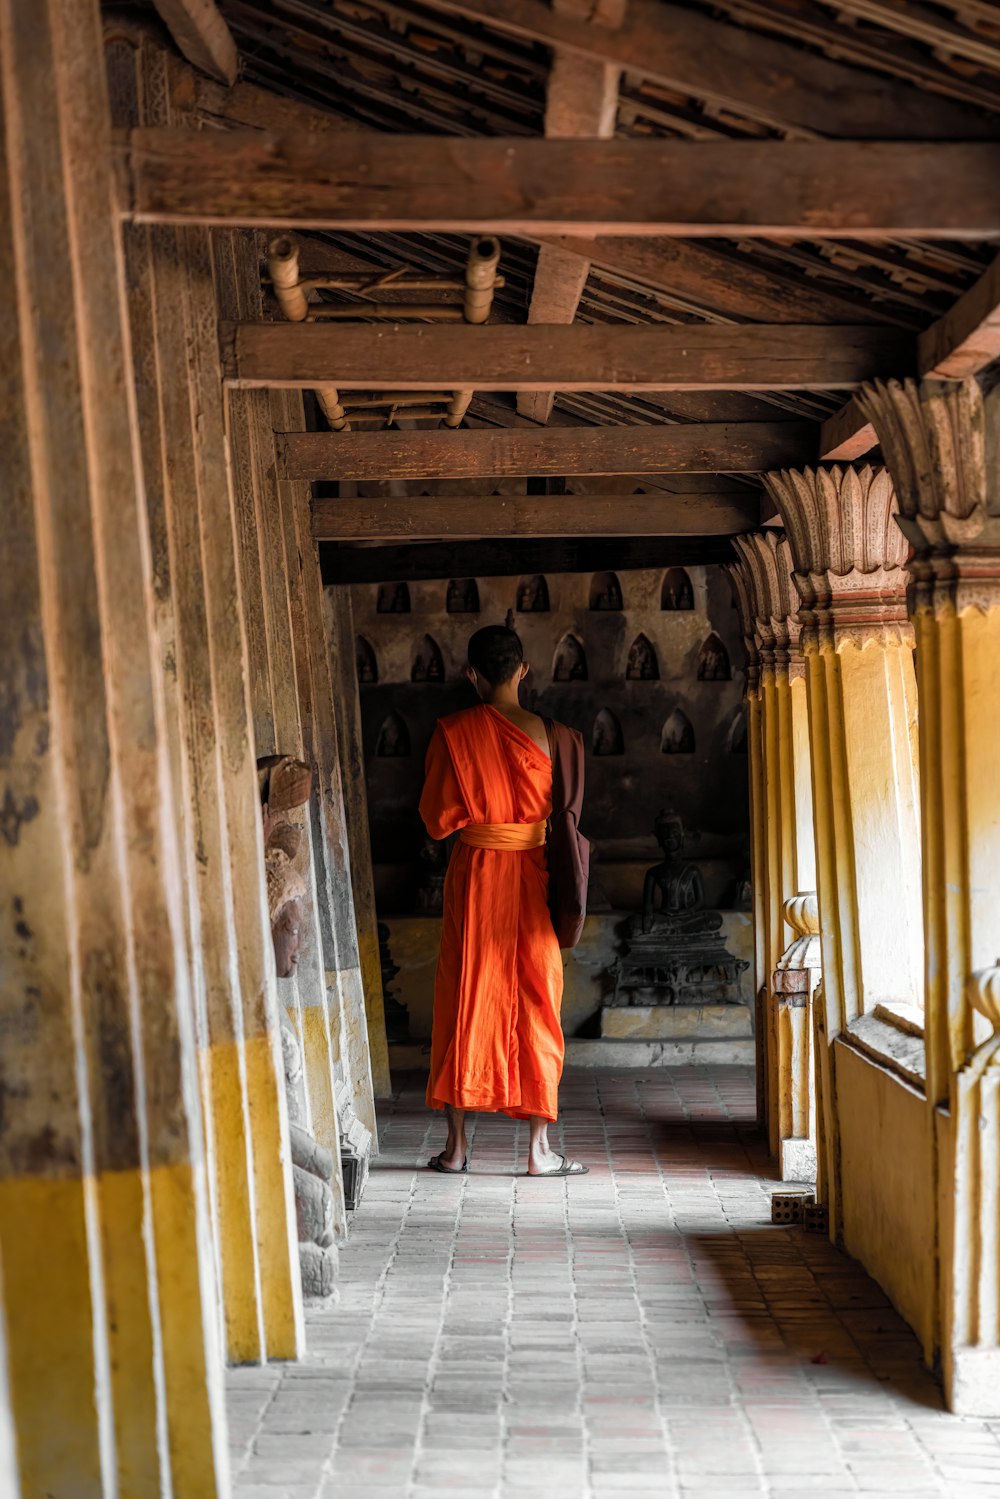 a monk in an orange robe walking down a hallway